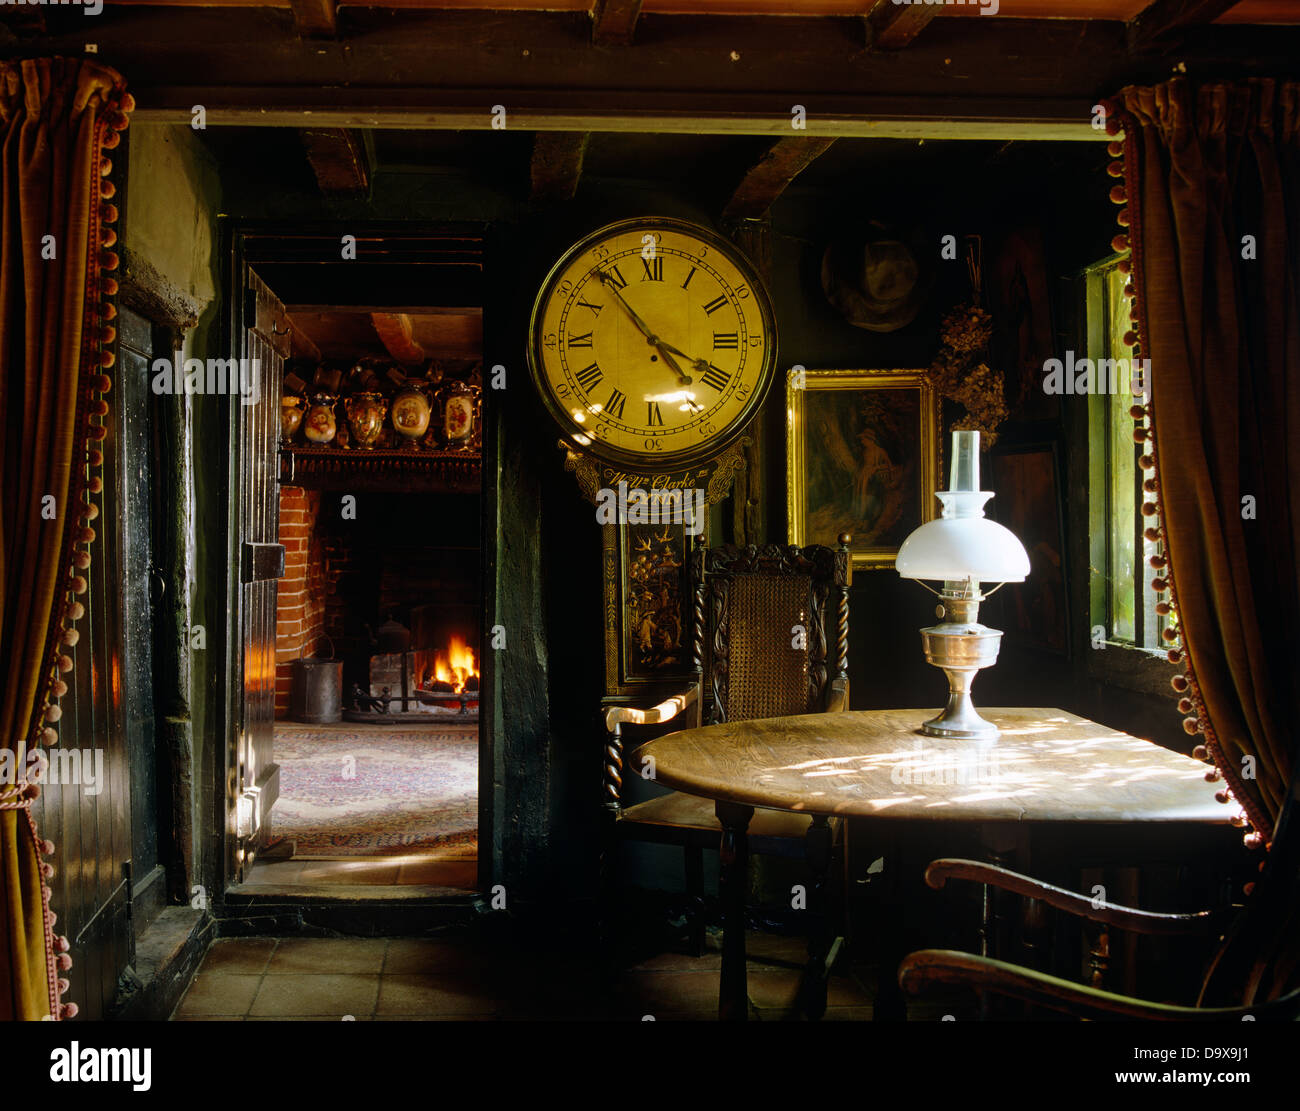 Horloge antique et de la vieille table en bois avec lampes en laiton dans la région de Tudor cottage salle à manger avec poutres apparentes au plafond bas Banque D'Images